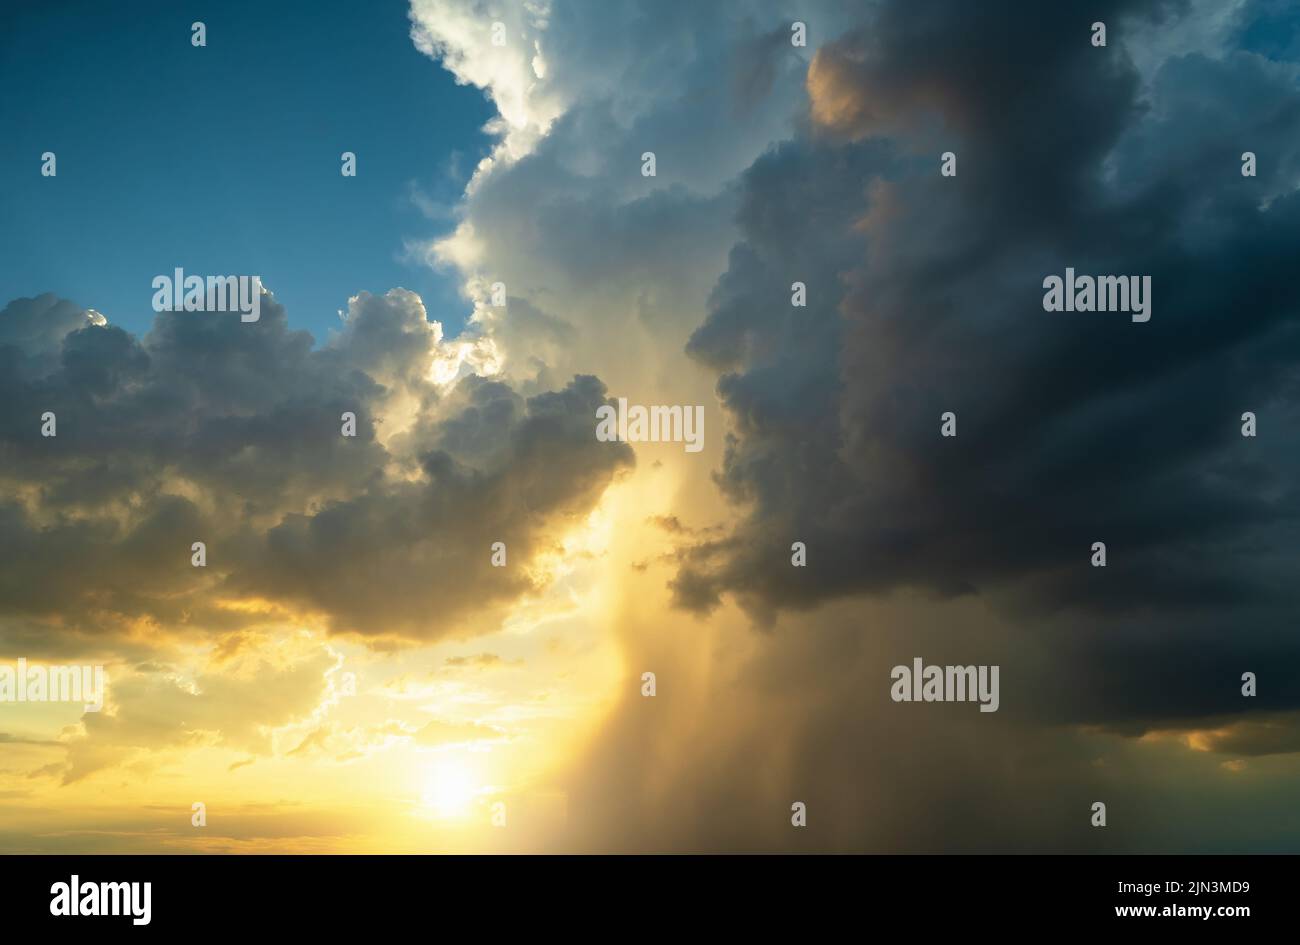 Dramatische Sturmwolken am majestätischen Sonnenuntergangshimmel. Schöne Natur Hintergrund. Kräfte der Natur Konzept. Stockfoto